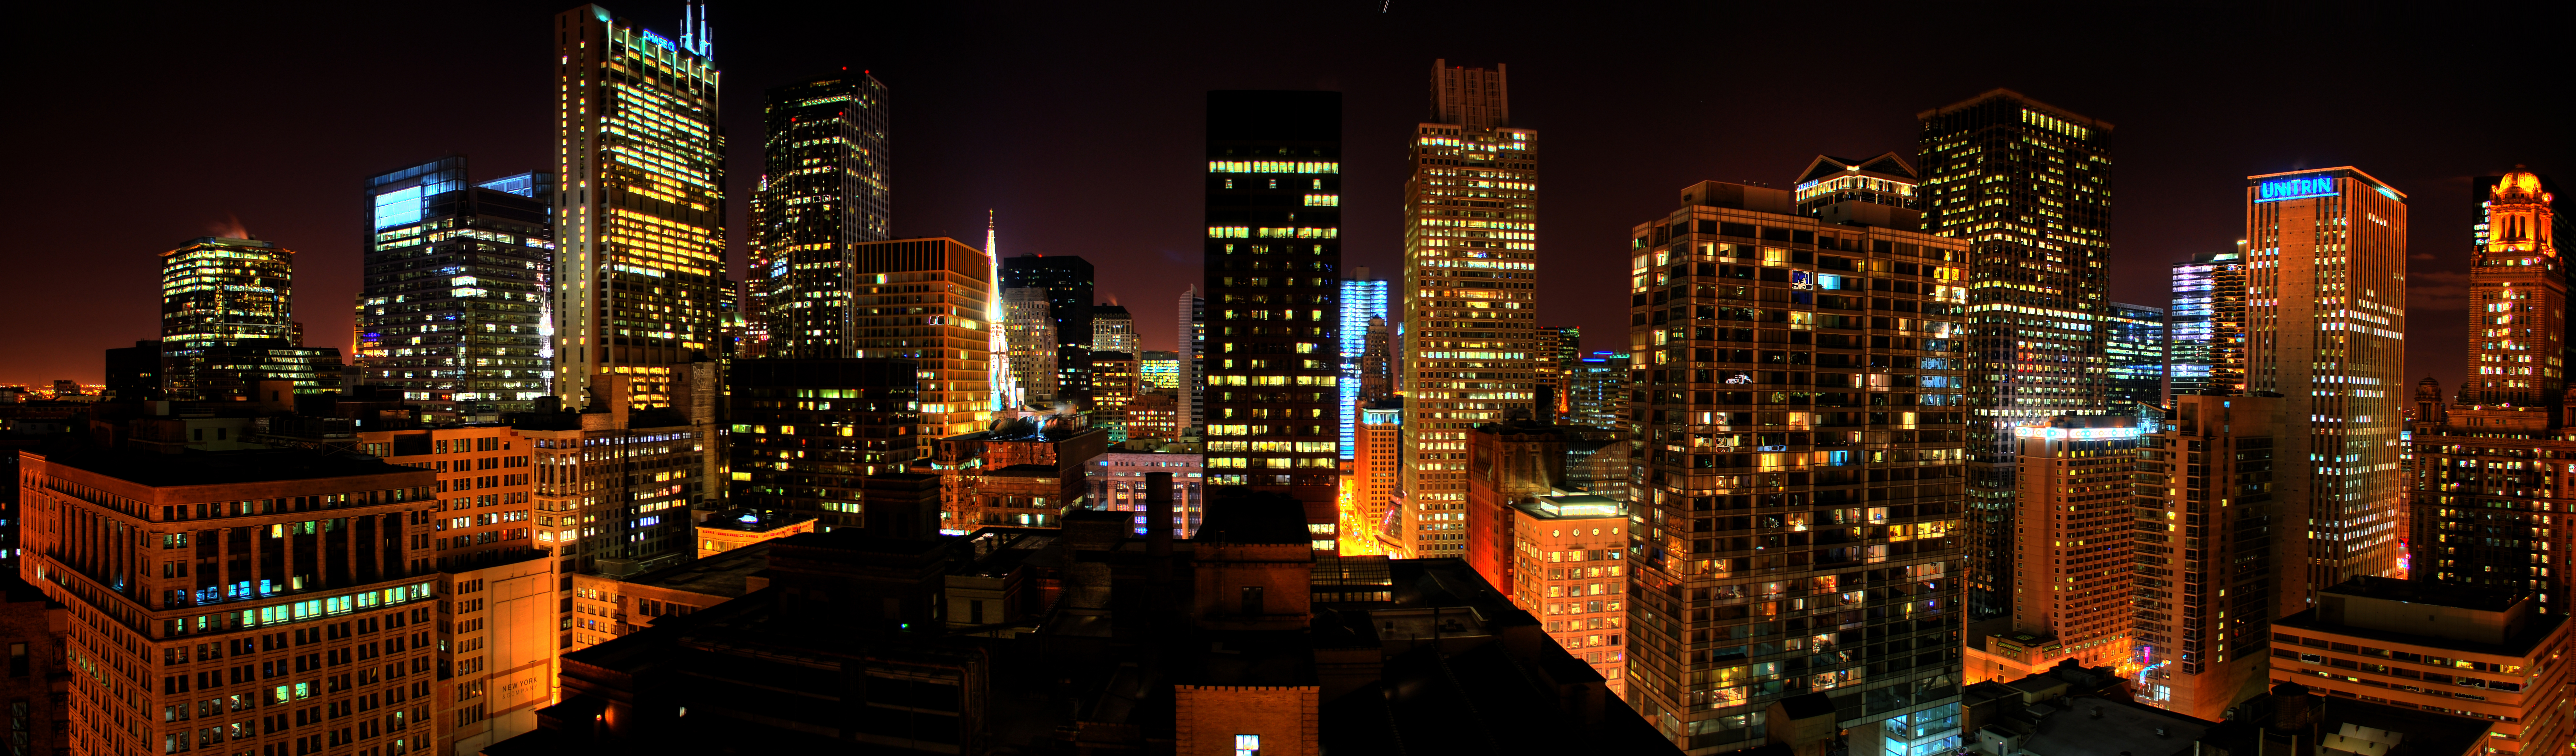 Chicago panorama 2012 photo